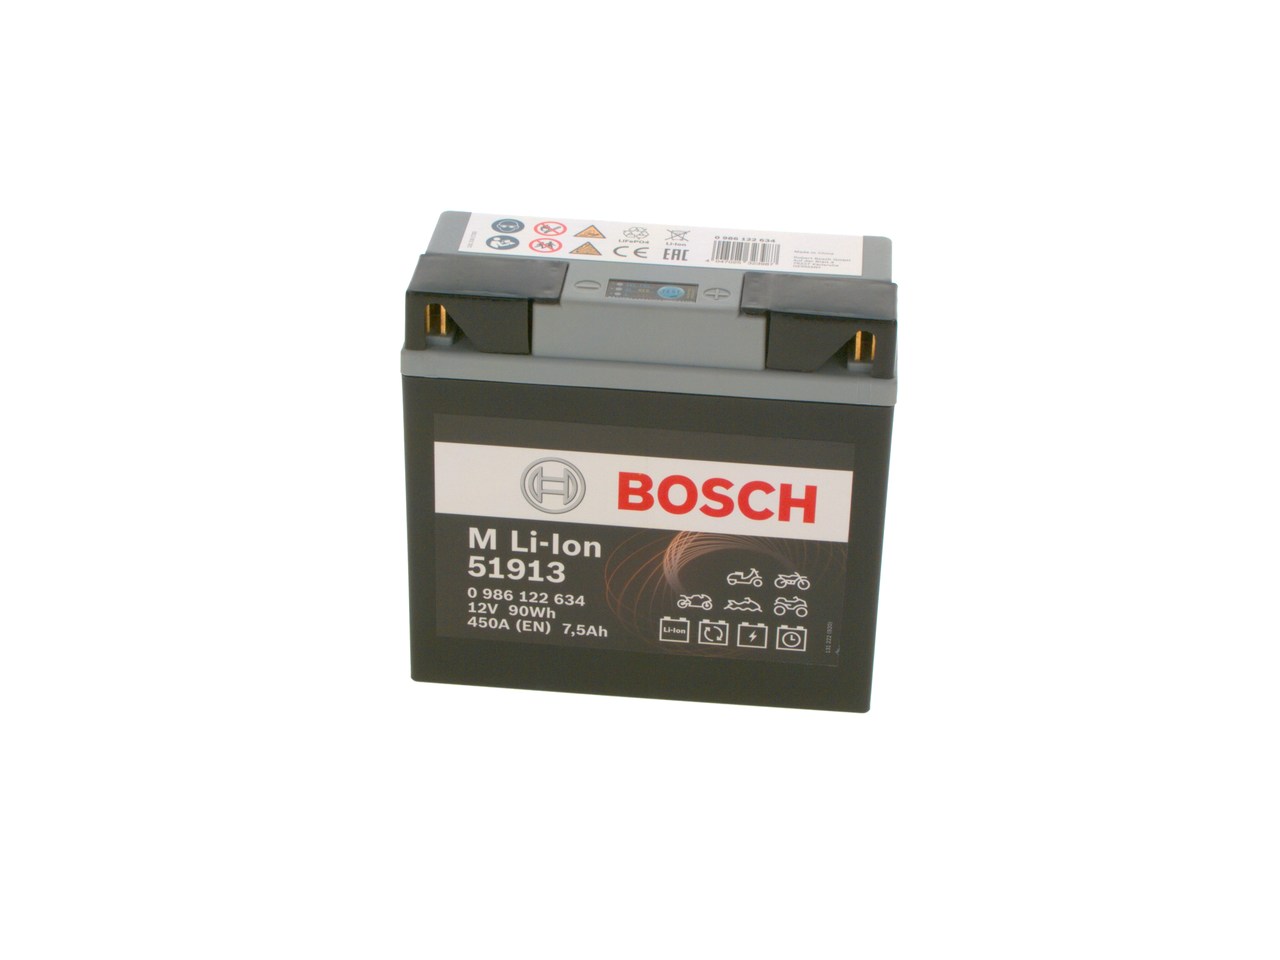 YAMAHA YP Batterie 12V 7,5Ah 450A B00 Li-Ionen-Batterie BOSCH 0986122634